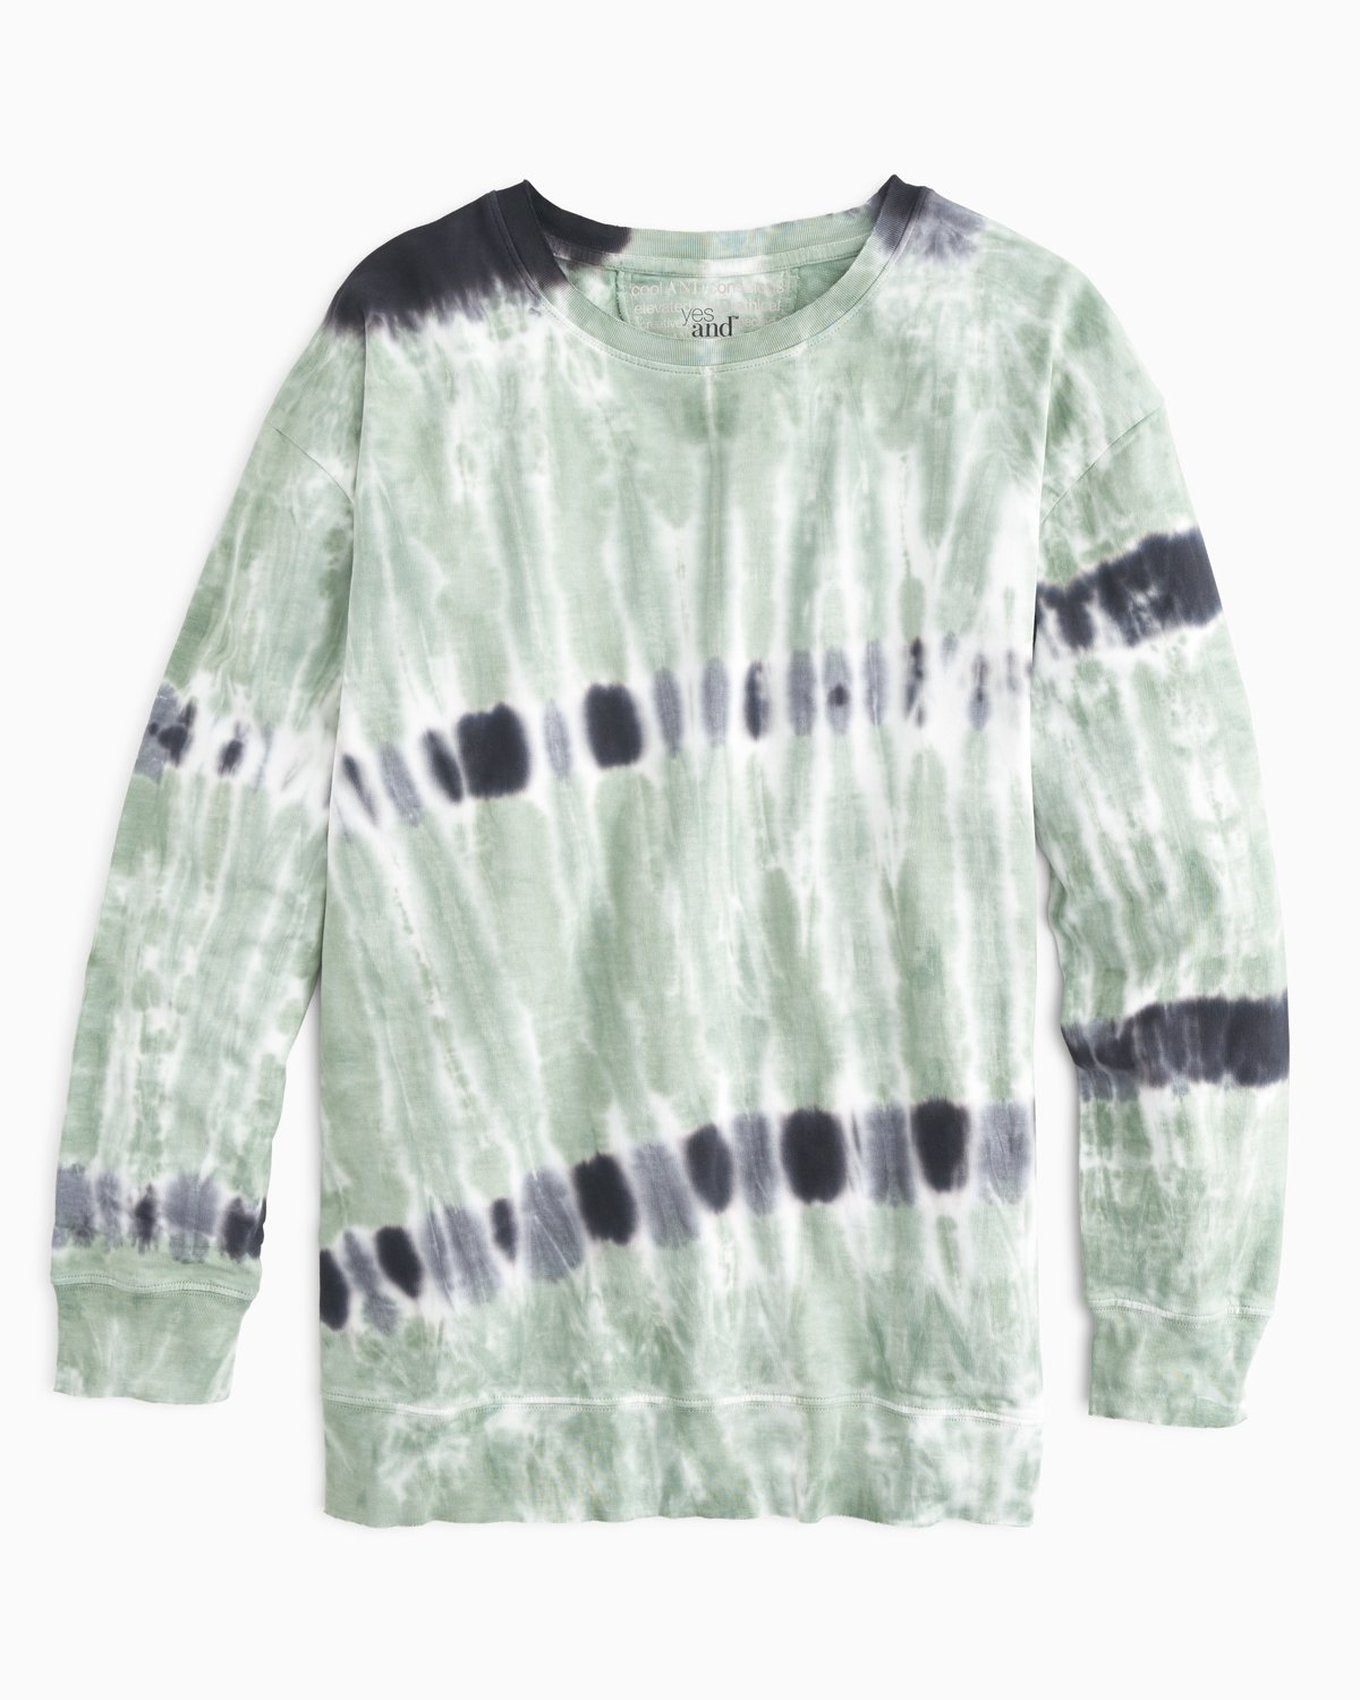 YesAnd Organic Tie Dye Sweatshirt Dress Sweatshirt Dress in color Multi Tie Dye C01 and shape sheath